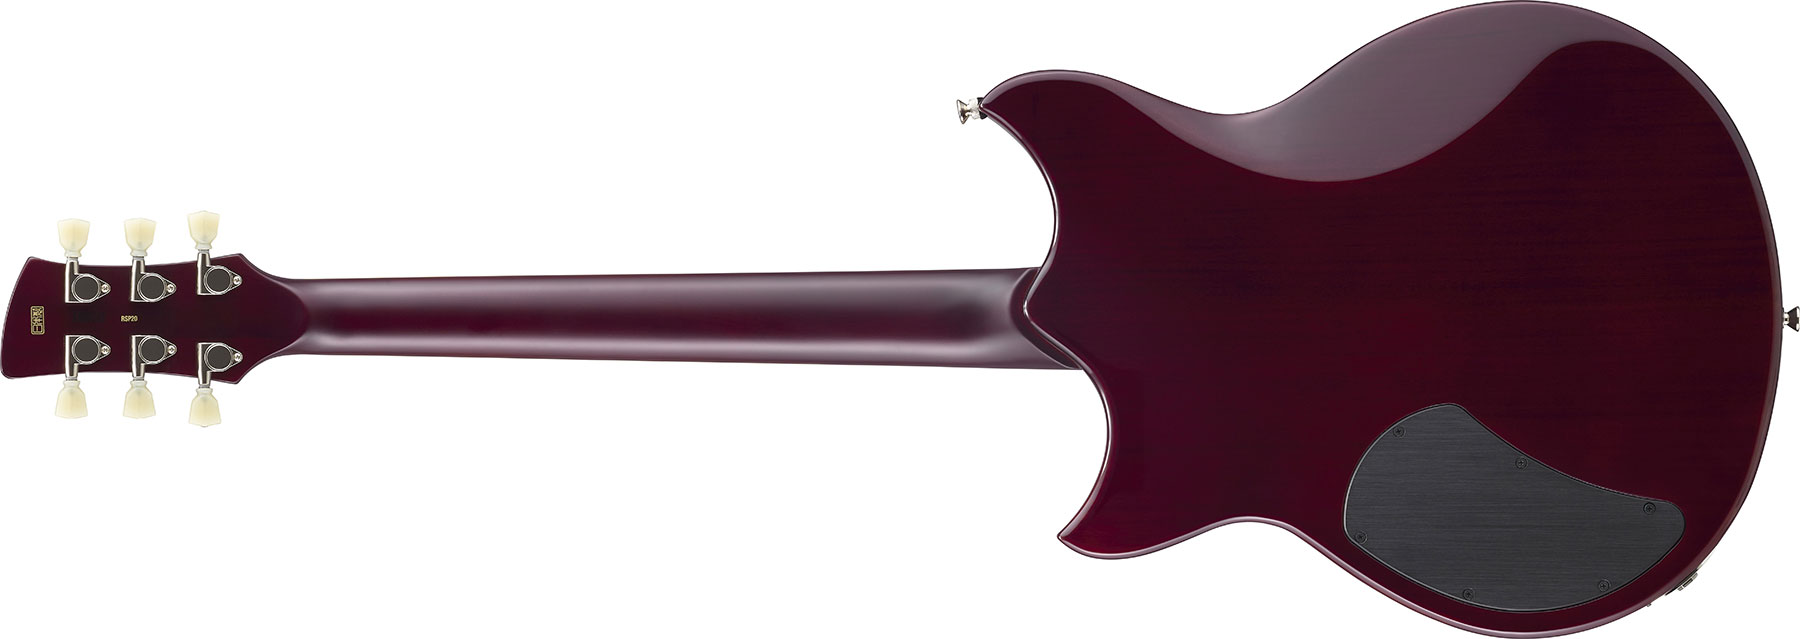 Yamaha Rss02t Revstar Standard 2p90 Ht Rw - Swift Blue - Guitare Électrique Double Cut - Variation 2